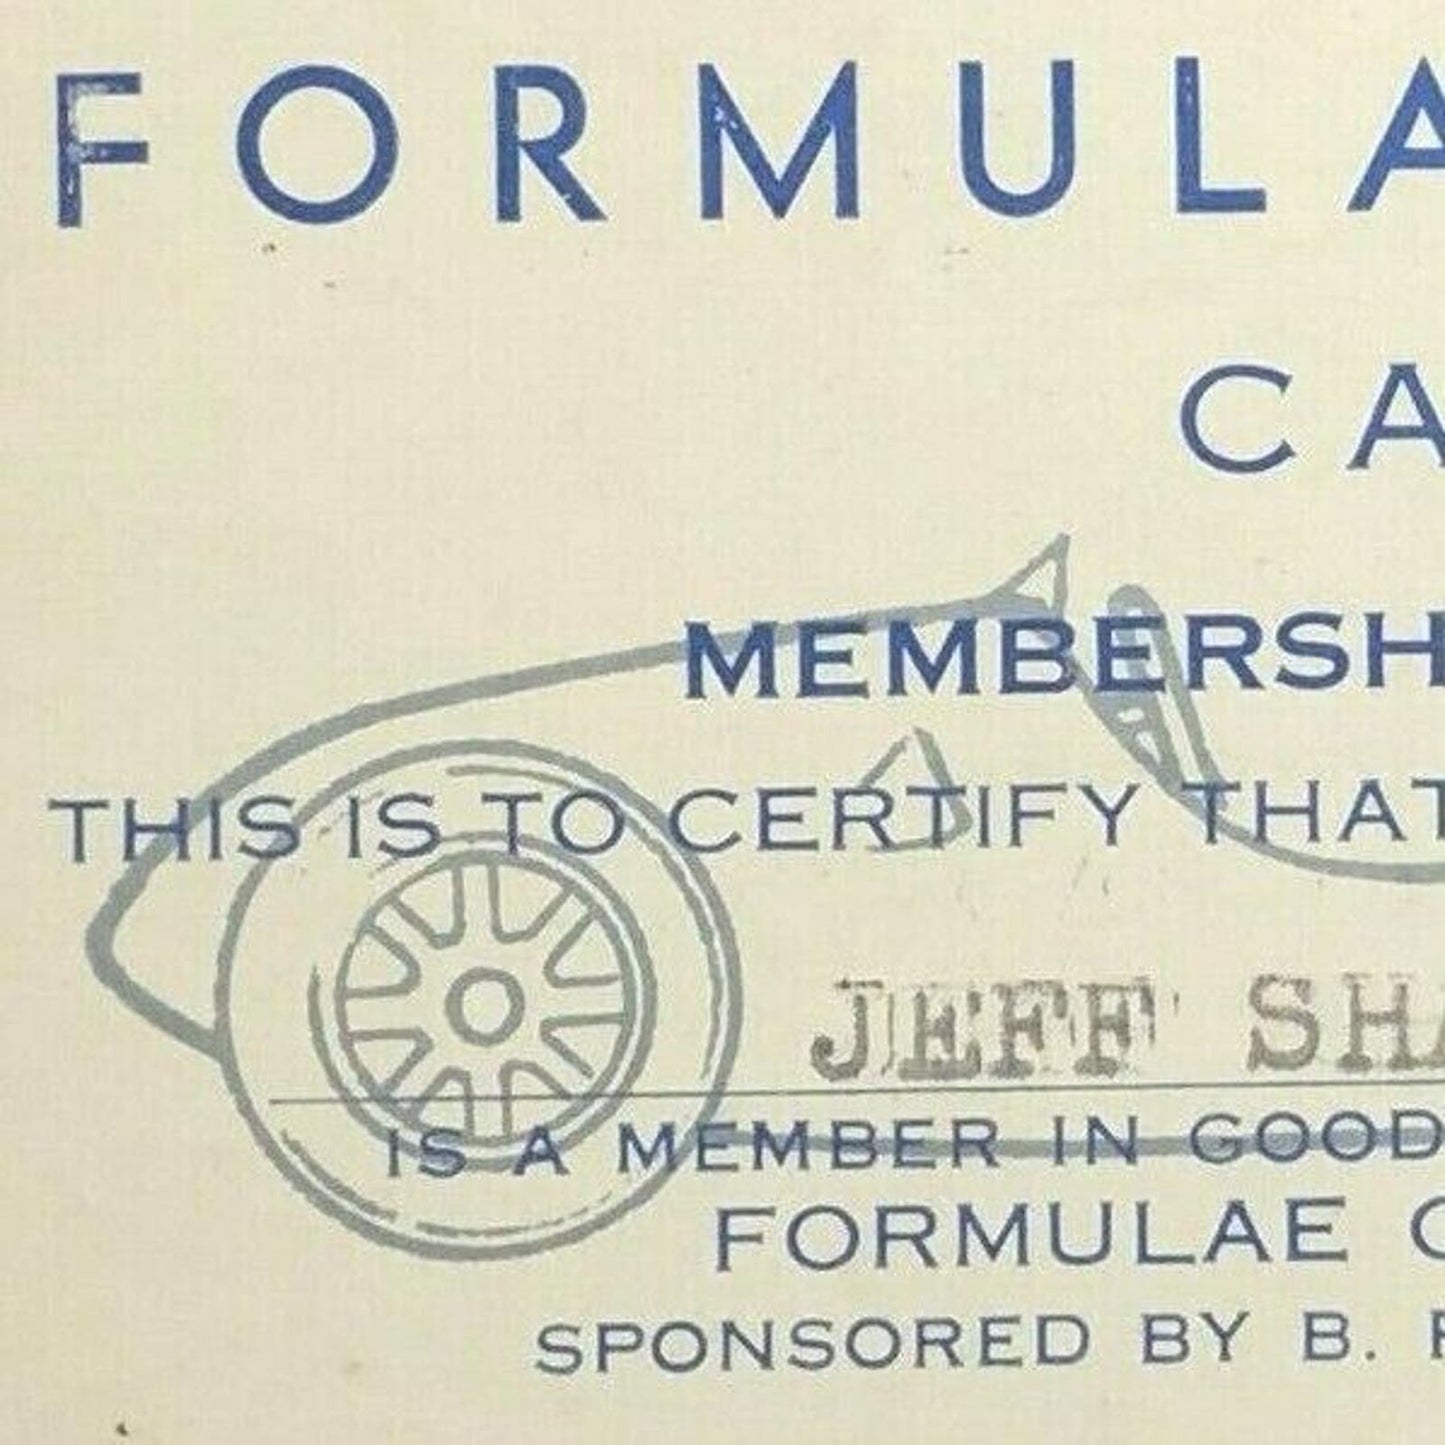 c1960's Pomona Formulae Car Club / Elks #789 Membership Card - Jeff Sharpe VGC